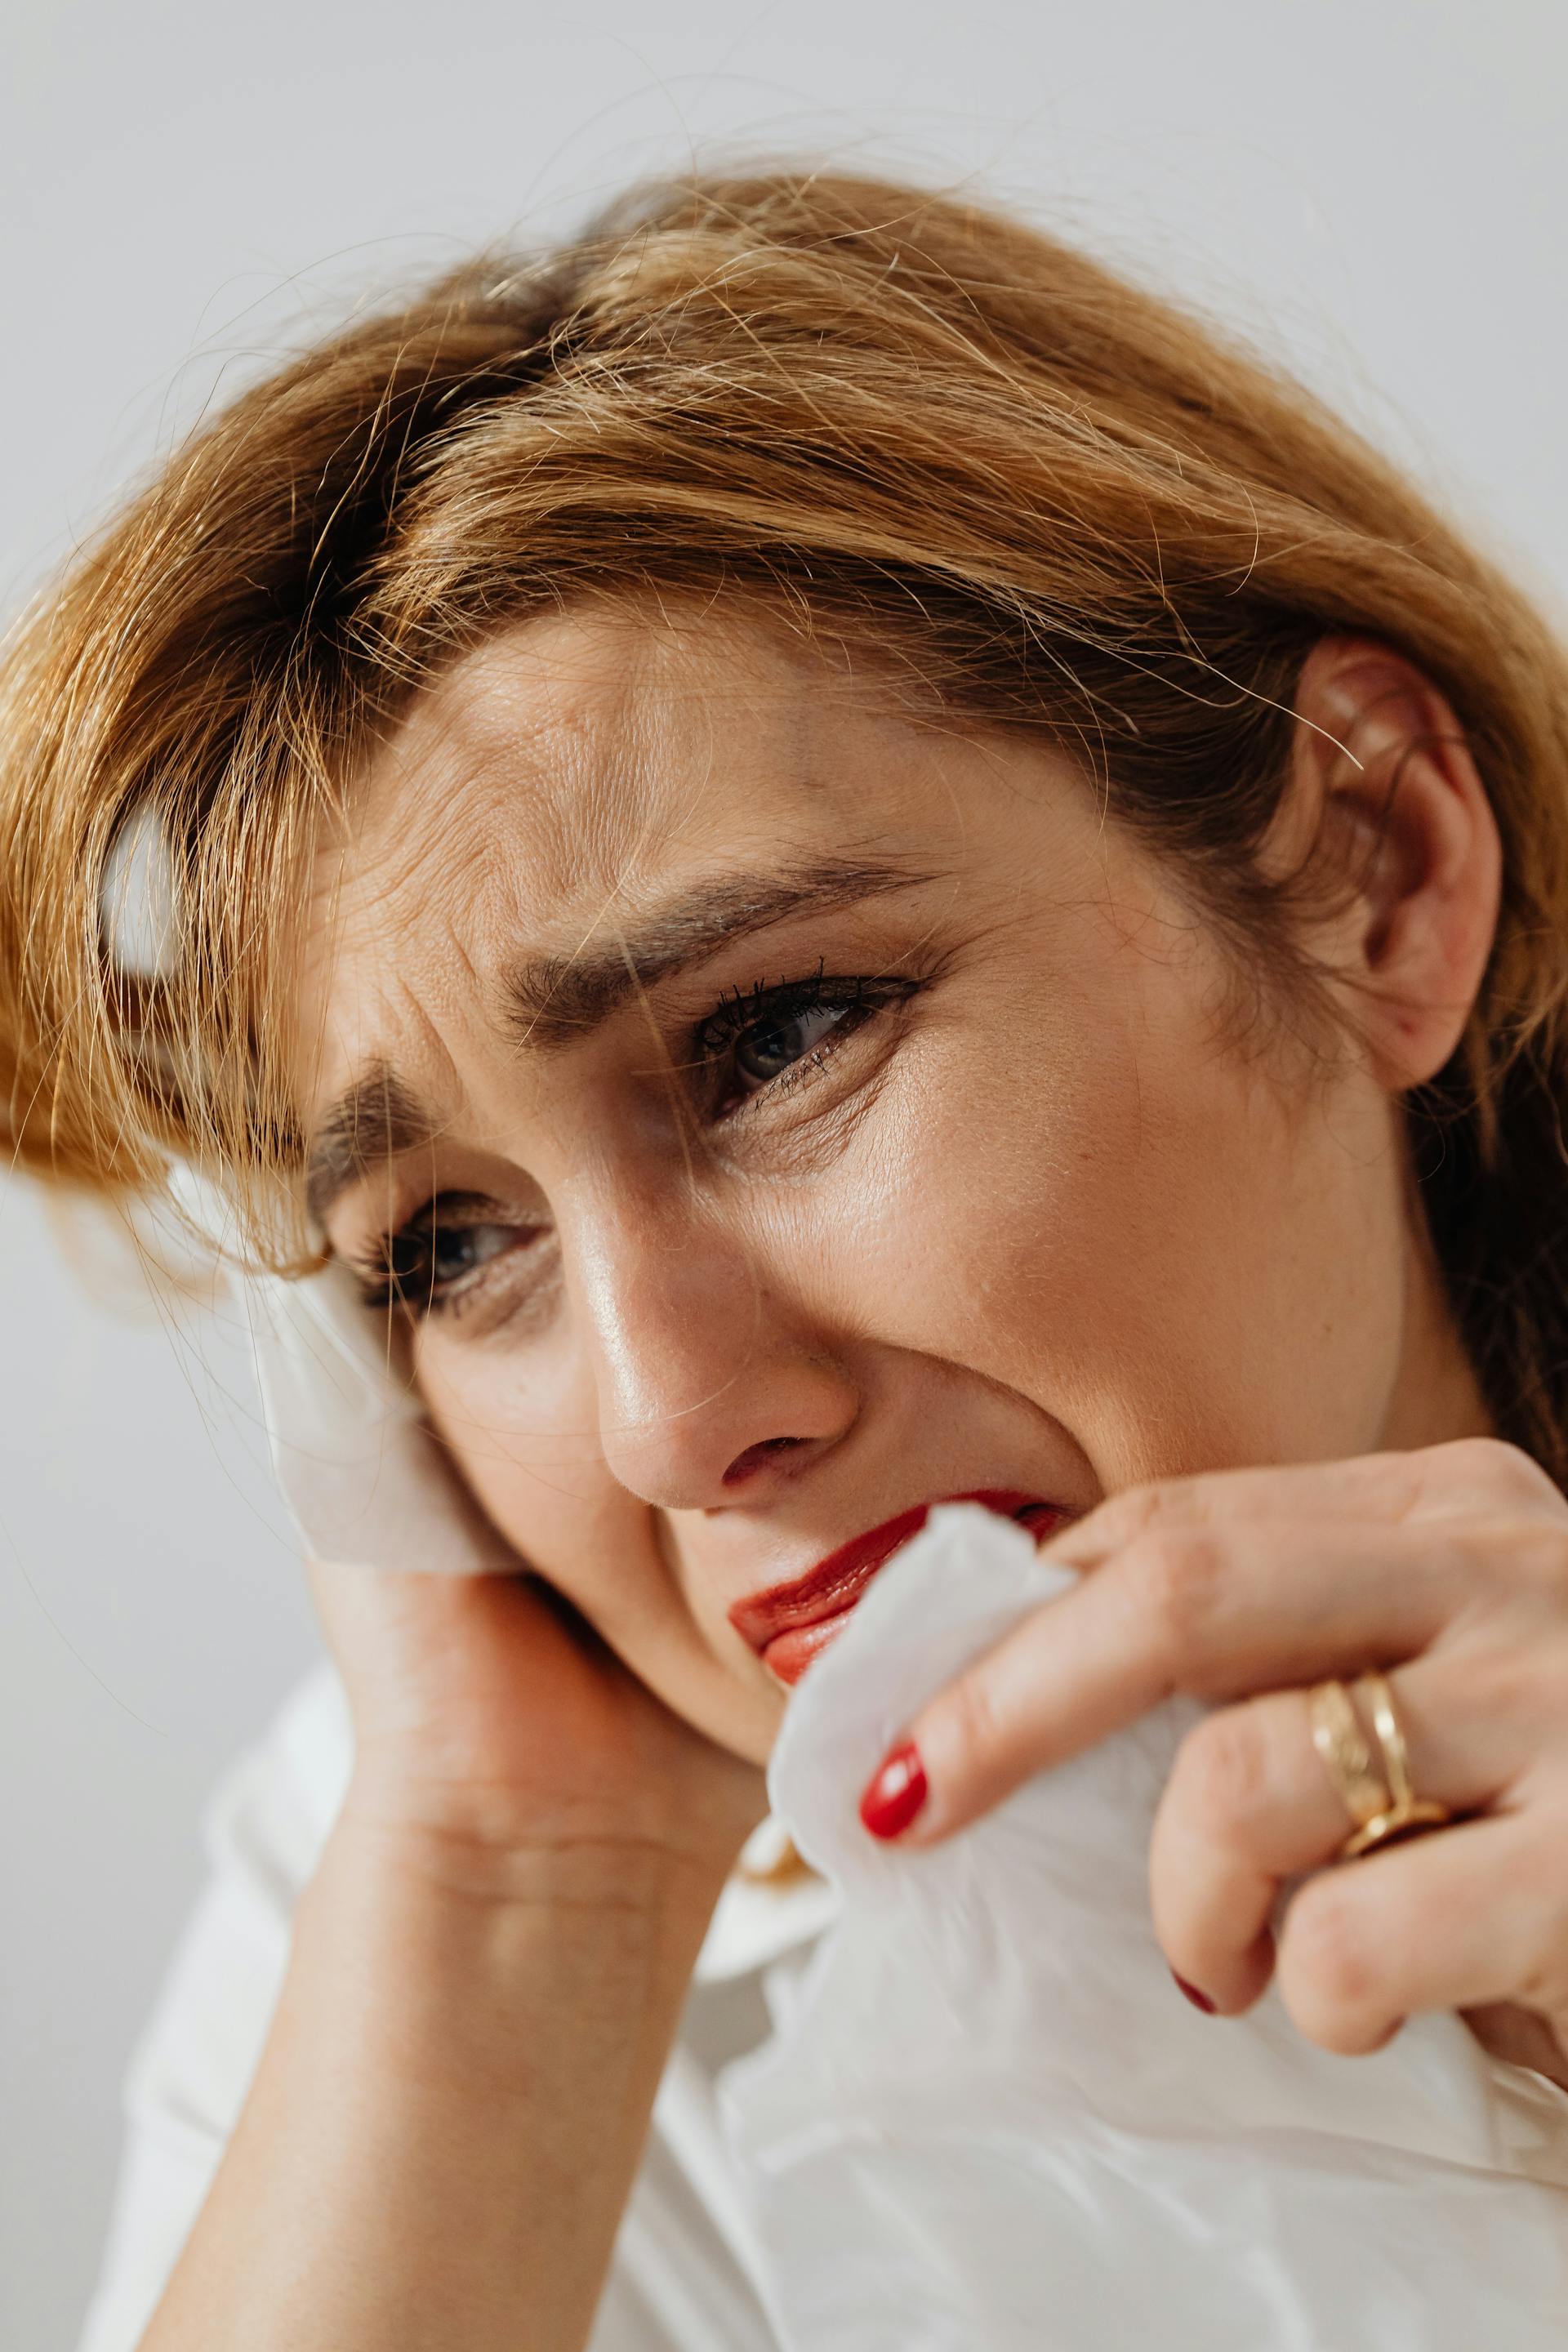 A heartbroken woman wiping her tears | Source: Pexels